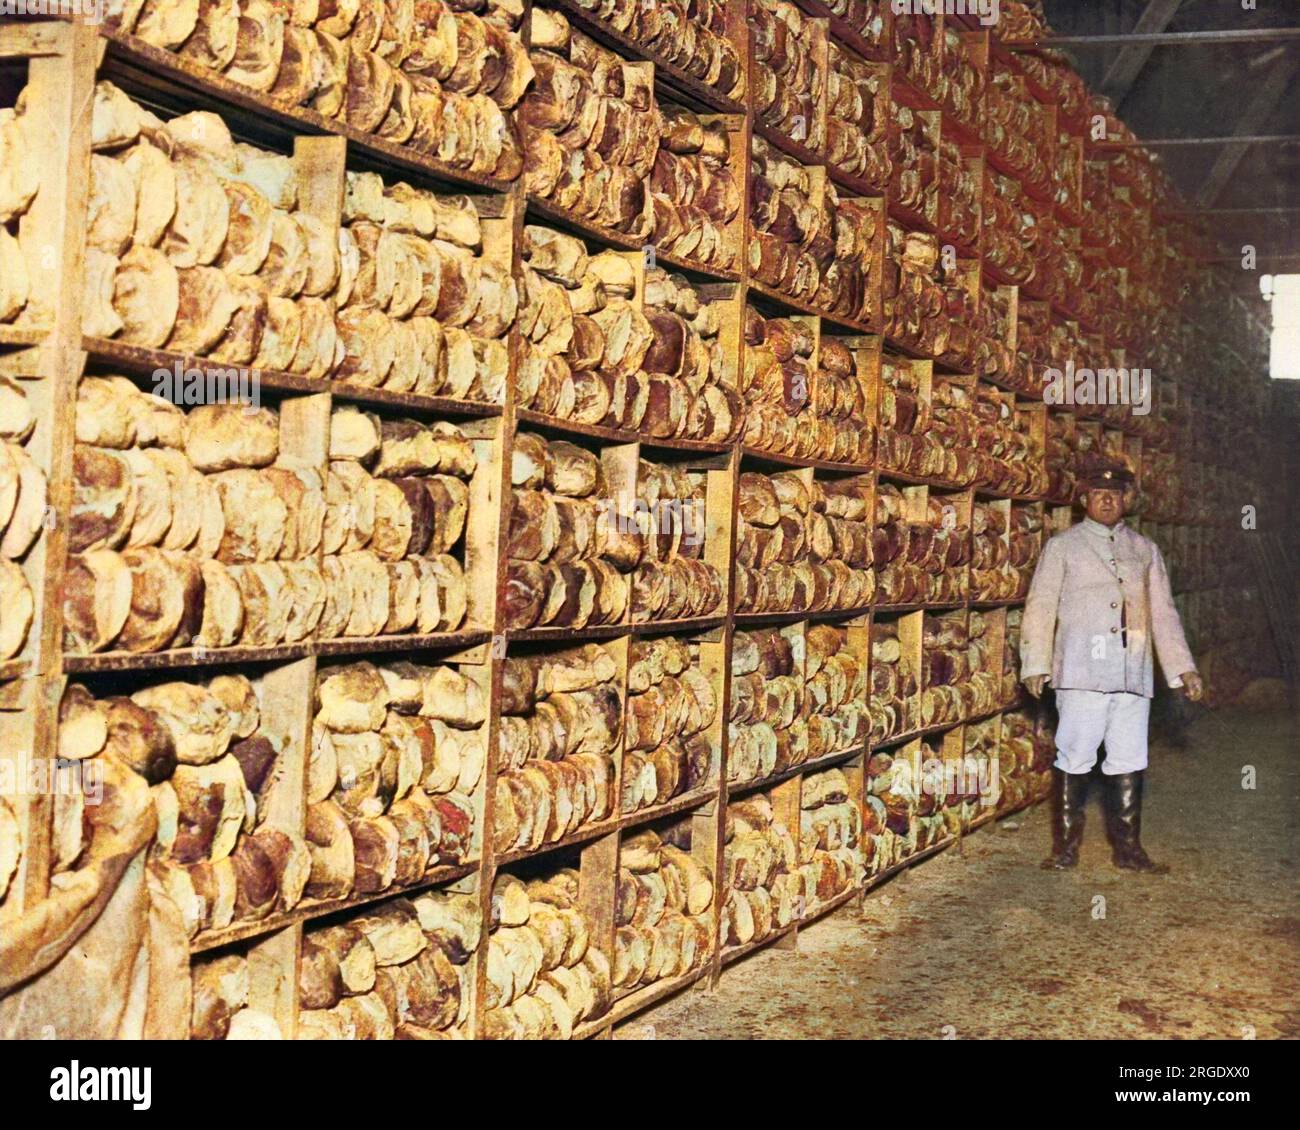 Szene in einem Brotladen, mit Brotlaibern, die auf Regalen gestapelt sind, um während des Ersten Weltkriegs an der Westfront zu britischen Soldaten zu gehen. Stockfoto